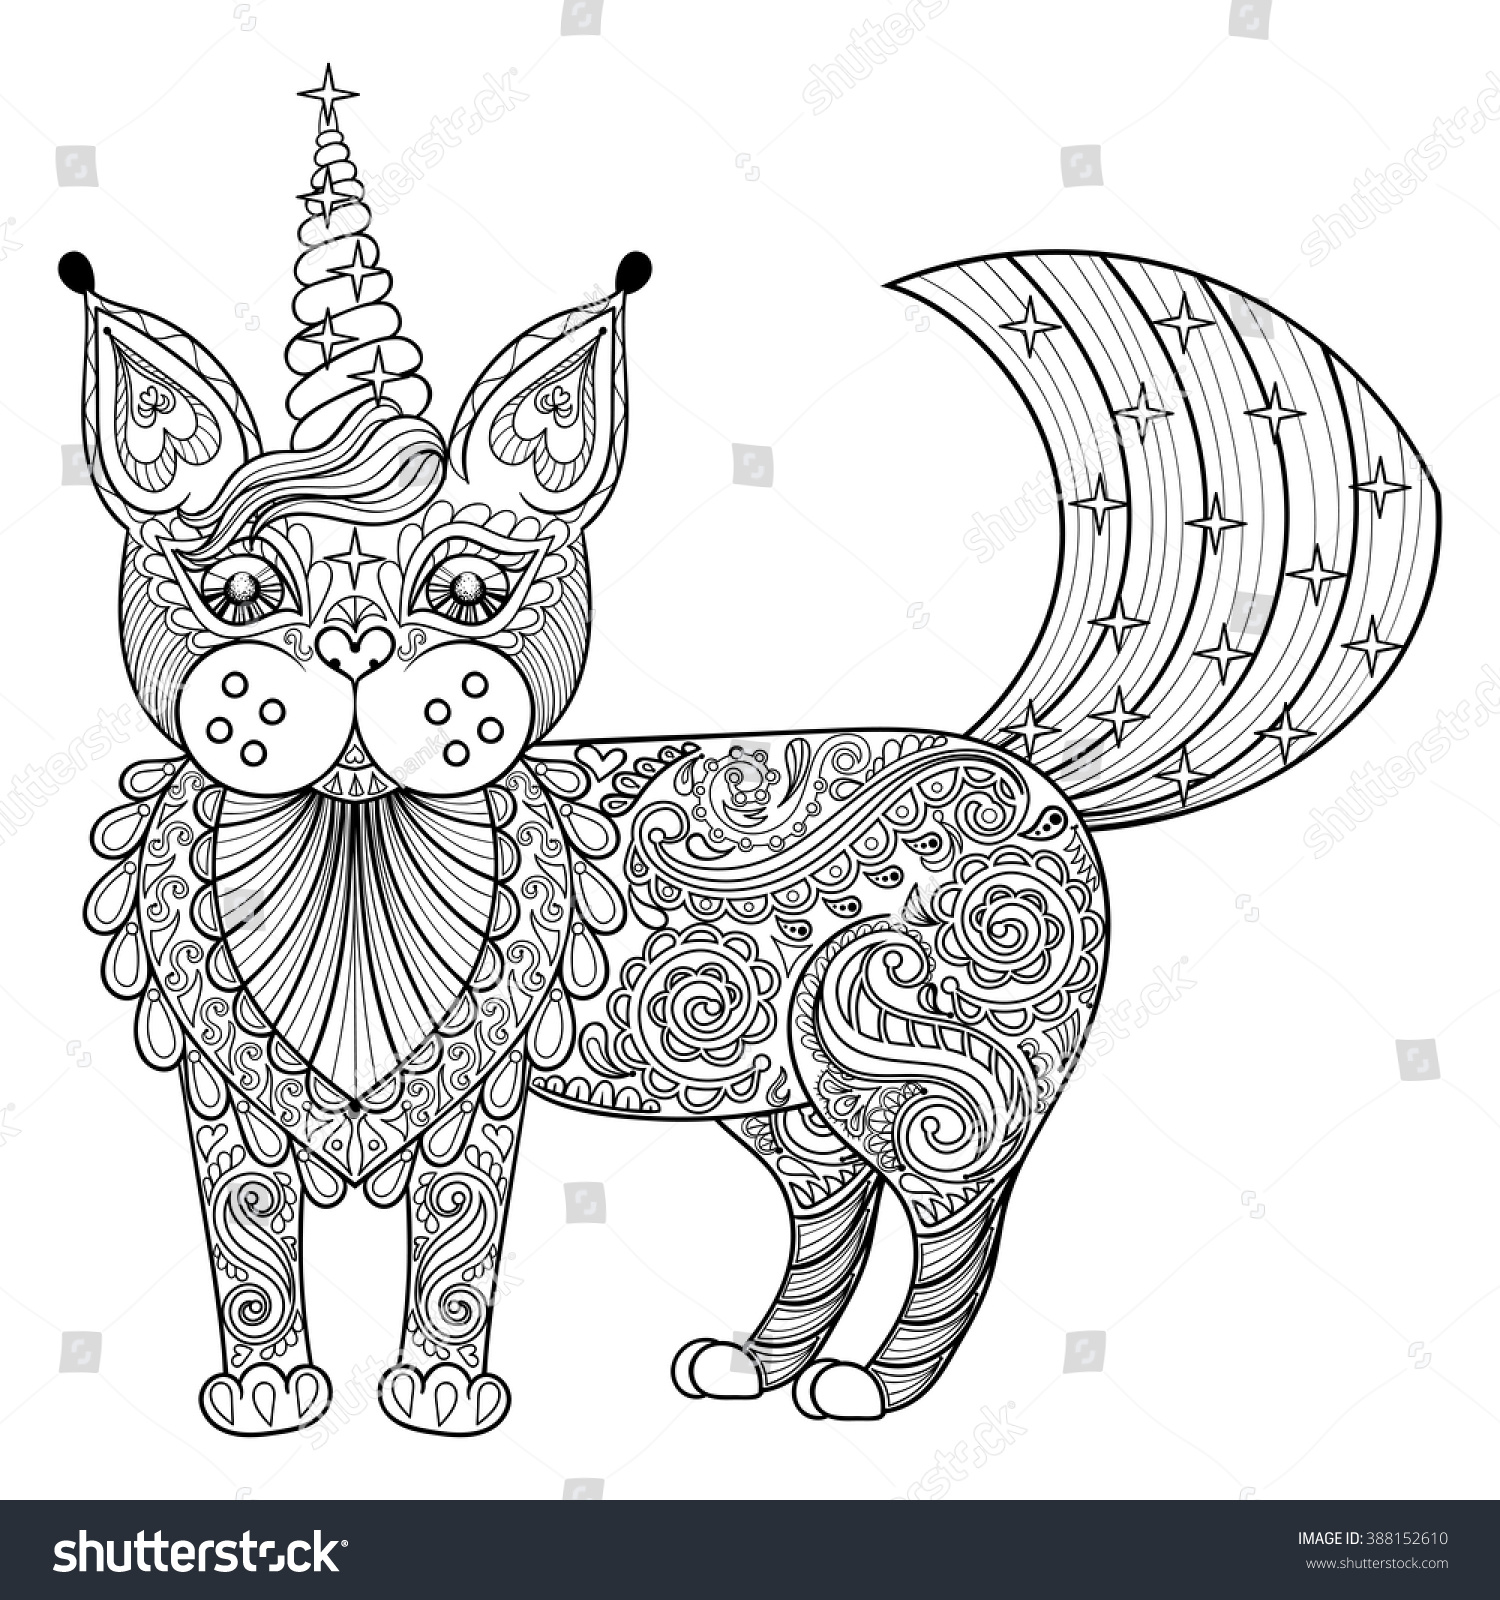 Vector Zentangle Magic Cat Unicorn Black Stock Vector 388152610 - Shutterstock